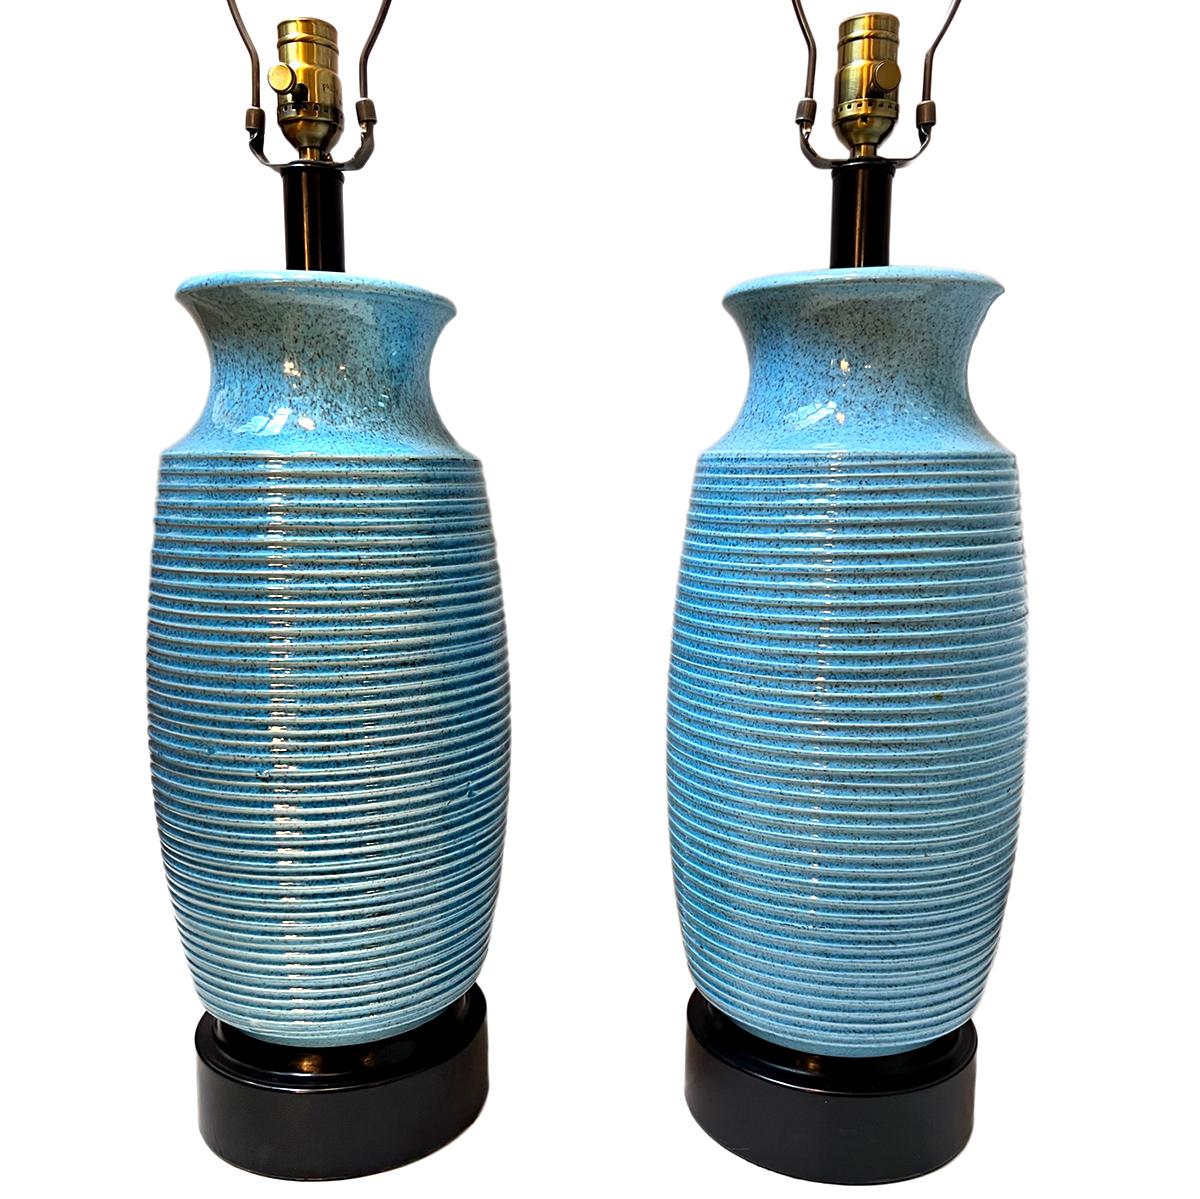 Ein Paar italienische Porzellan-Tischlampen aus den 1950er Jahren.

Abmessungen:
Höhe des Körpers : 21